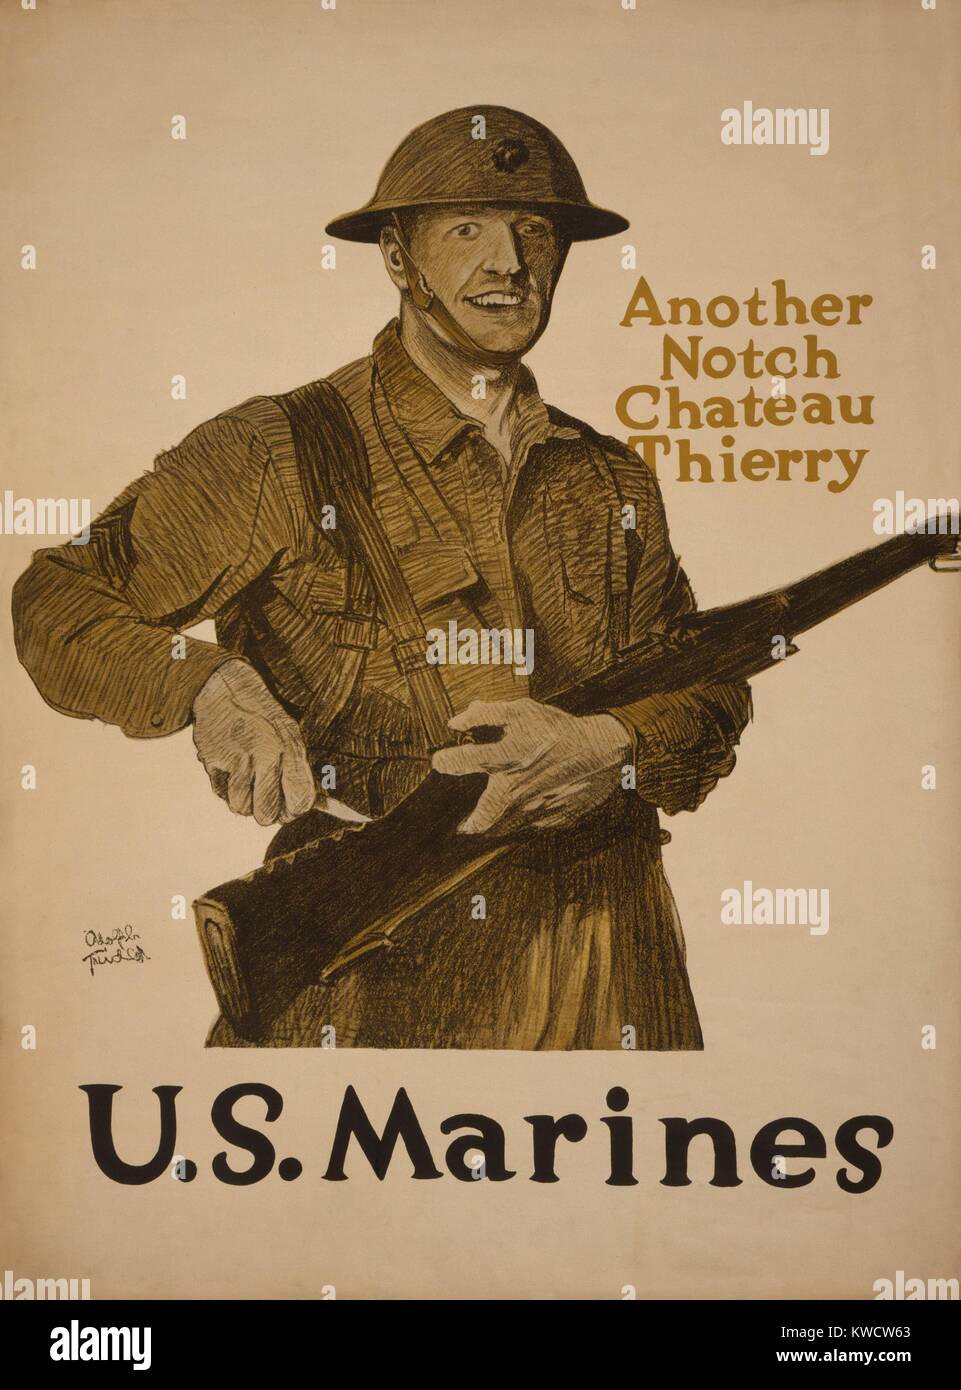 La Seconde Guerre mondiale 1. Affiche de recrutement. Une autre entaille, Chateau Thierry-U.S. Marines. Les Marines américains a remporté la bataille de Château-Thierry, le 18 juillet 1918. C'est une des premières actions de l'American Expeditionary Force (AEF), qui contré une attaque allemande a lancé le 15 juillet. (BSLOC 2013 1 184) Banque D'Images